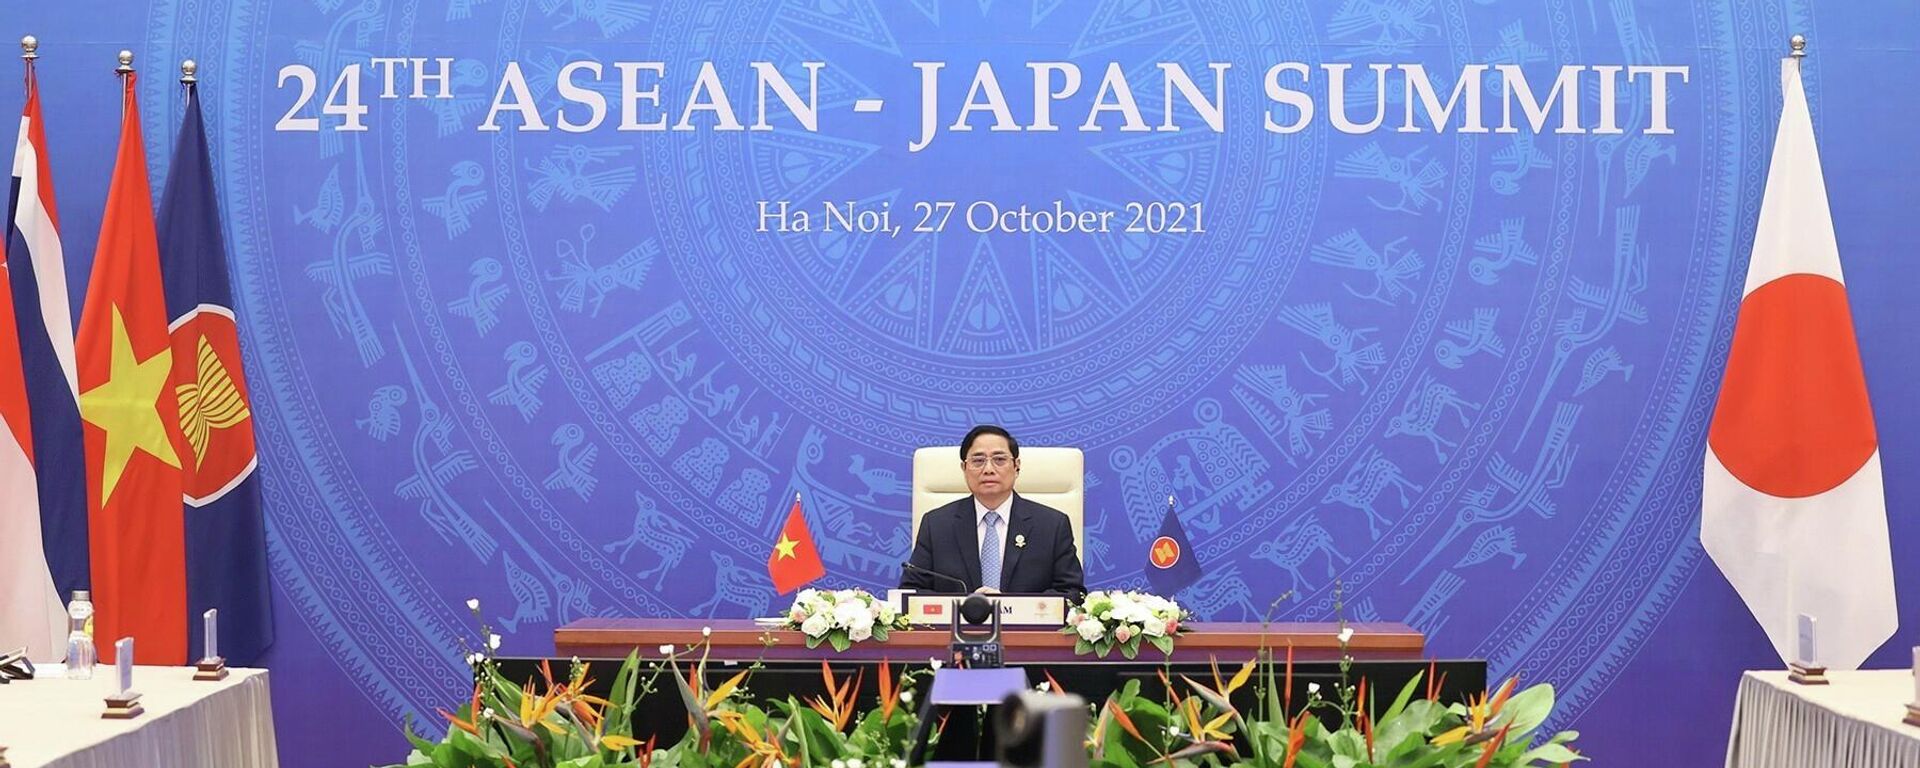 Thủ tướng Phạm Minh Chính phát biểu tại Hội nghị cấp cao ASEAN-Nhật Bản lần thứ 24. - Sputnik Việt Nam, 1920, 27.10.2021